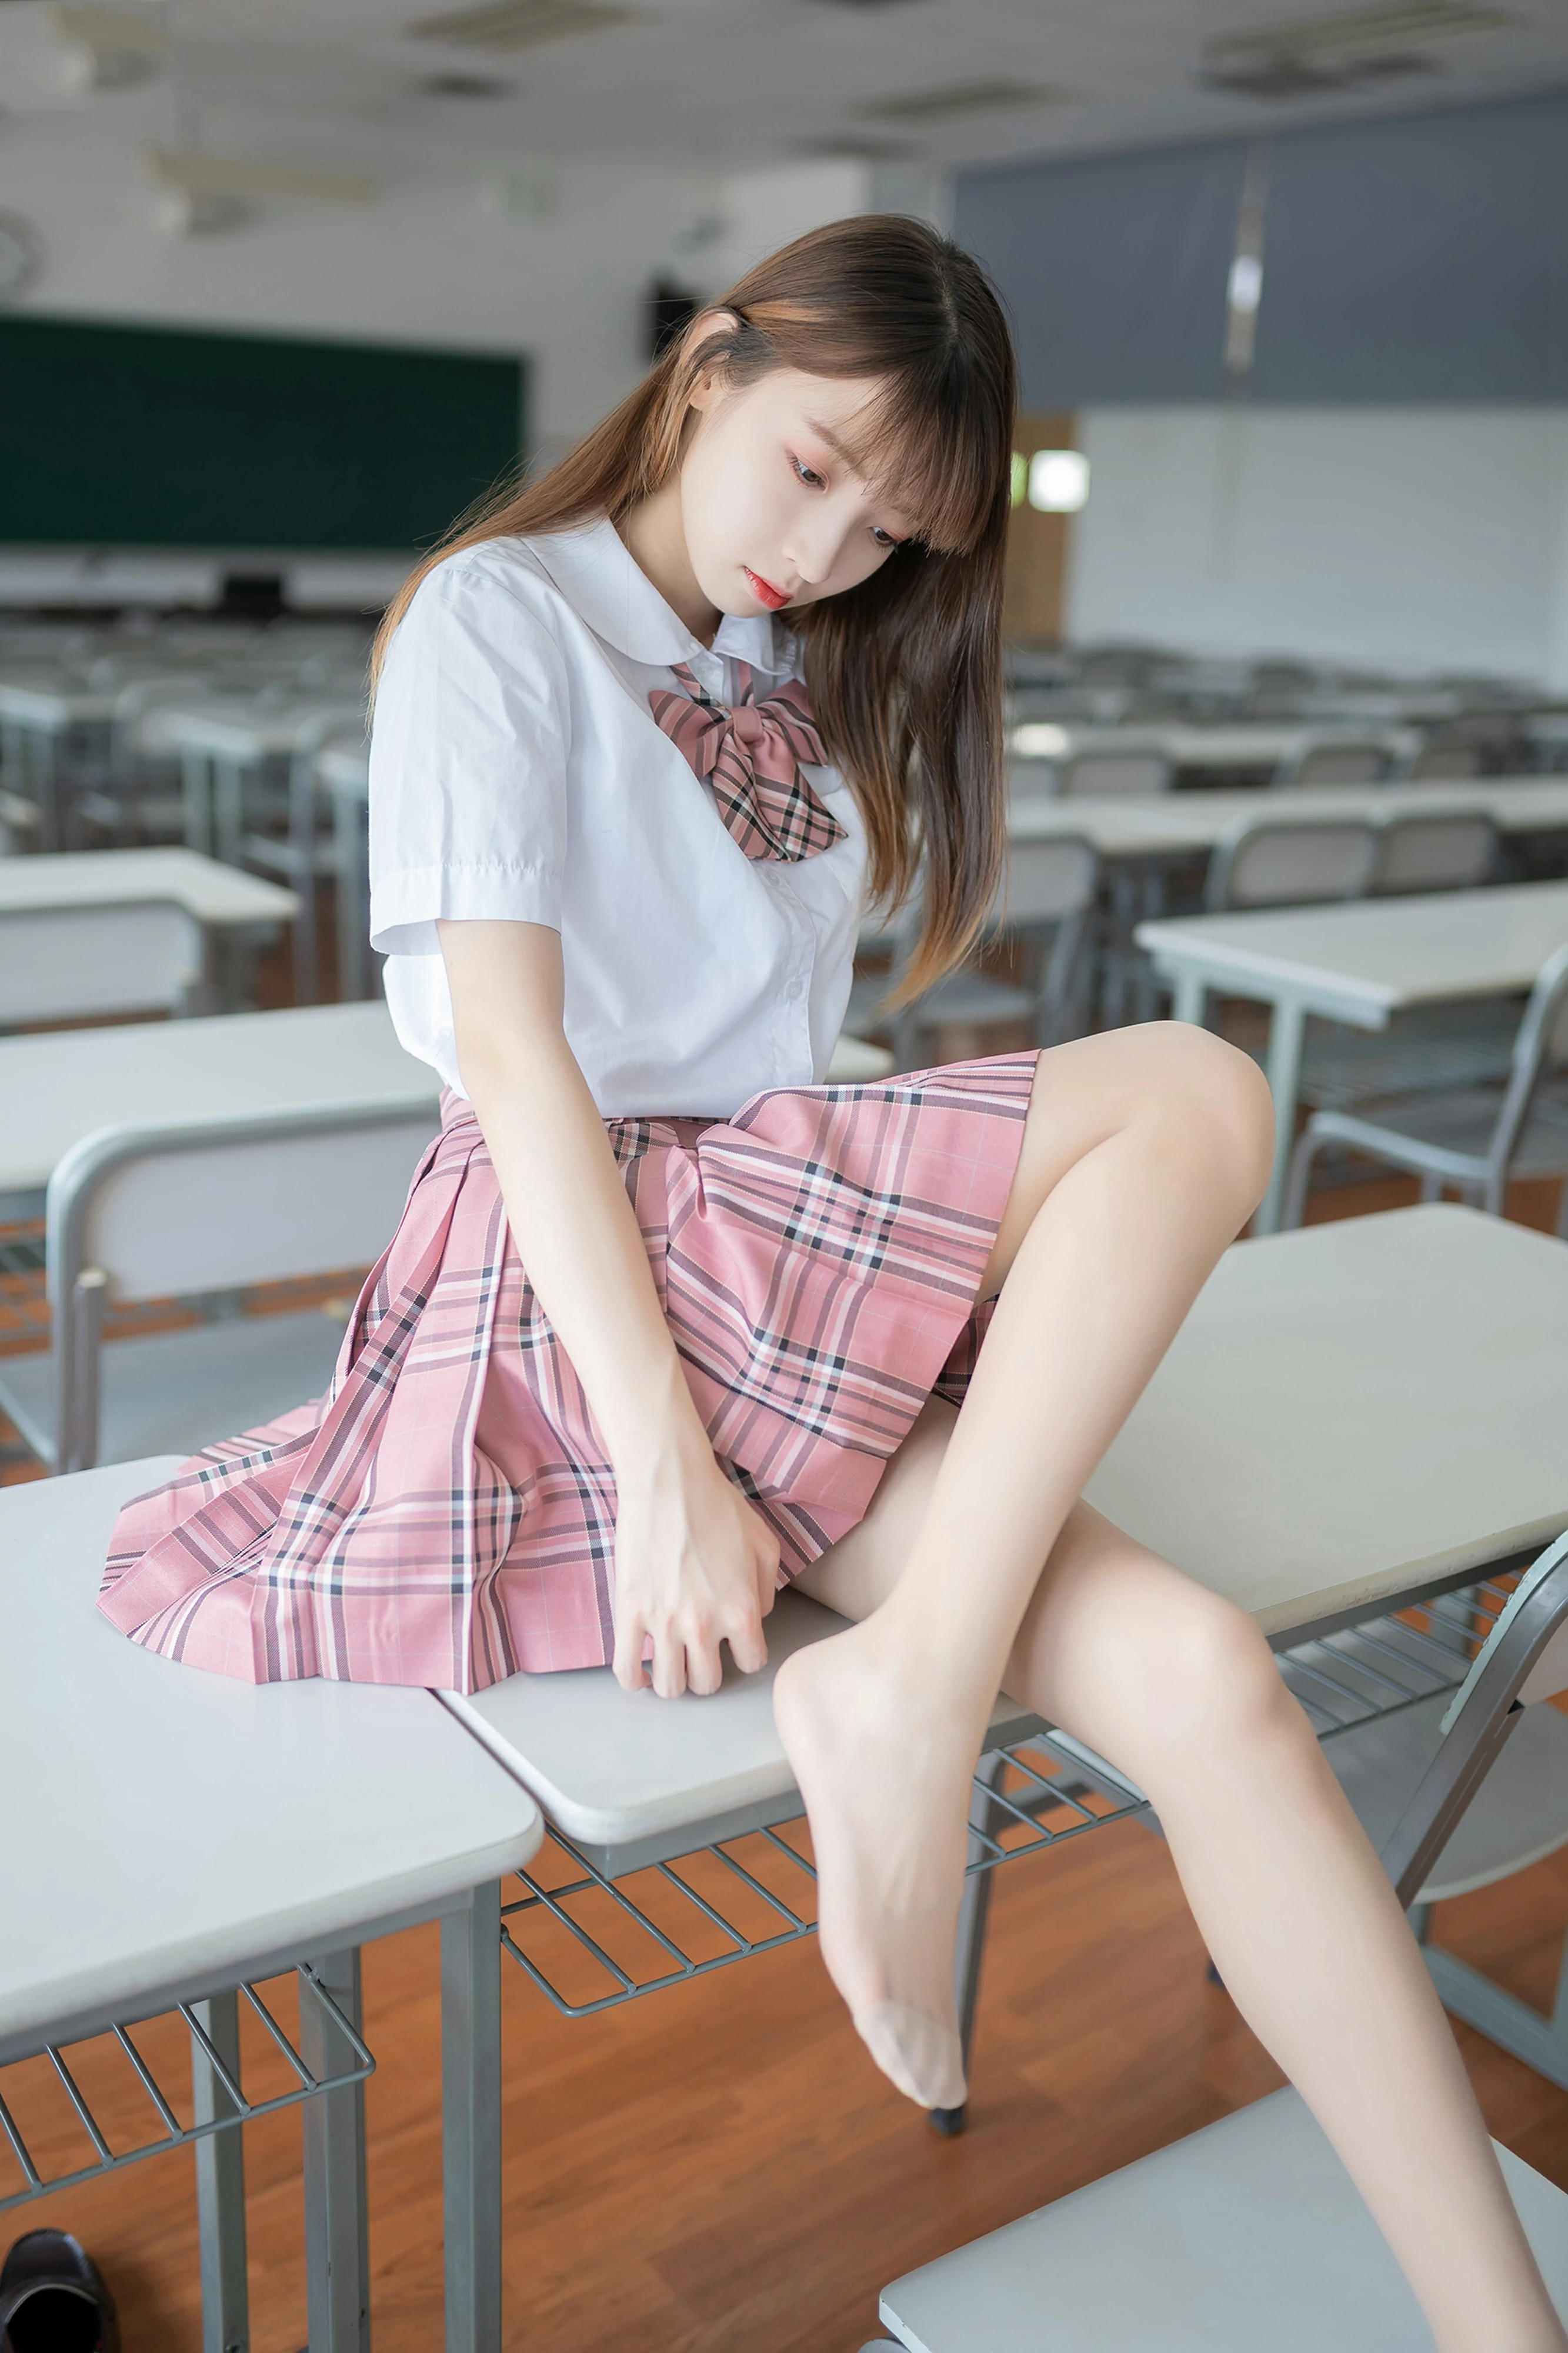 [风之领域]NO.108 性感高中女生小萝莉 白色短袖与粉色短裙加肉色丝袜美腿私房写真集,